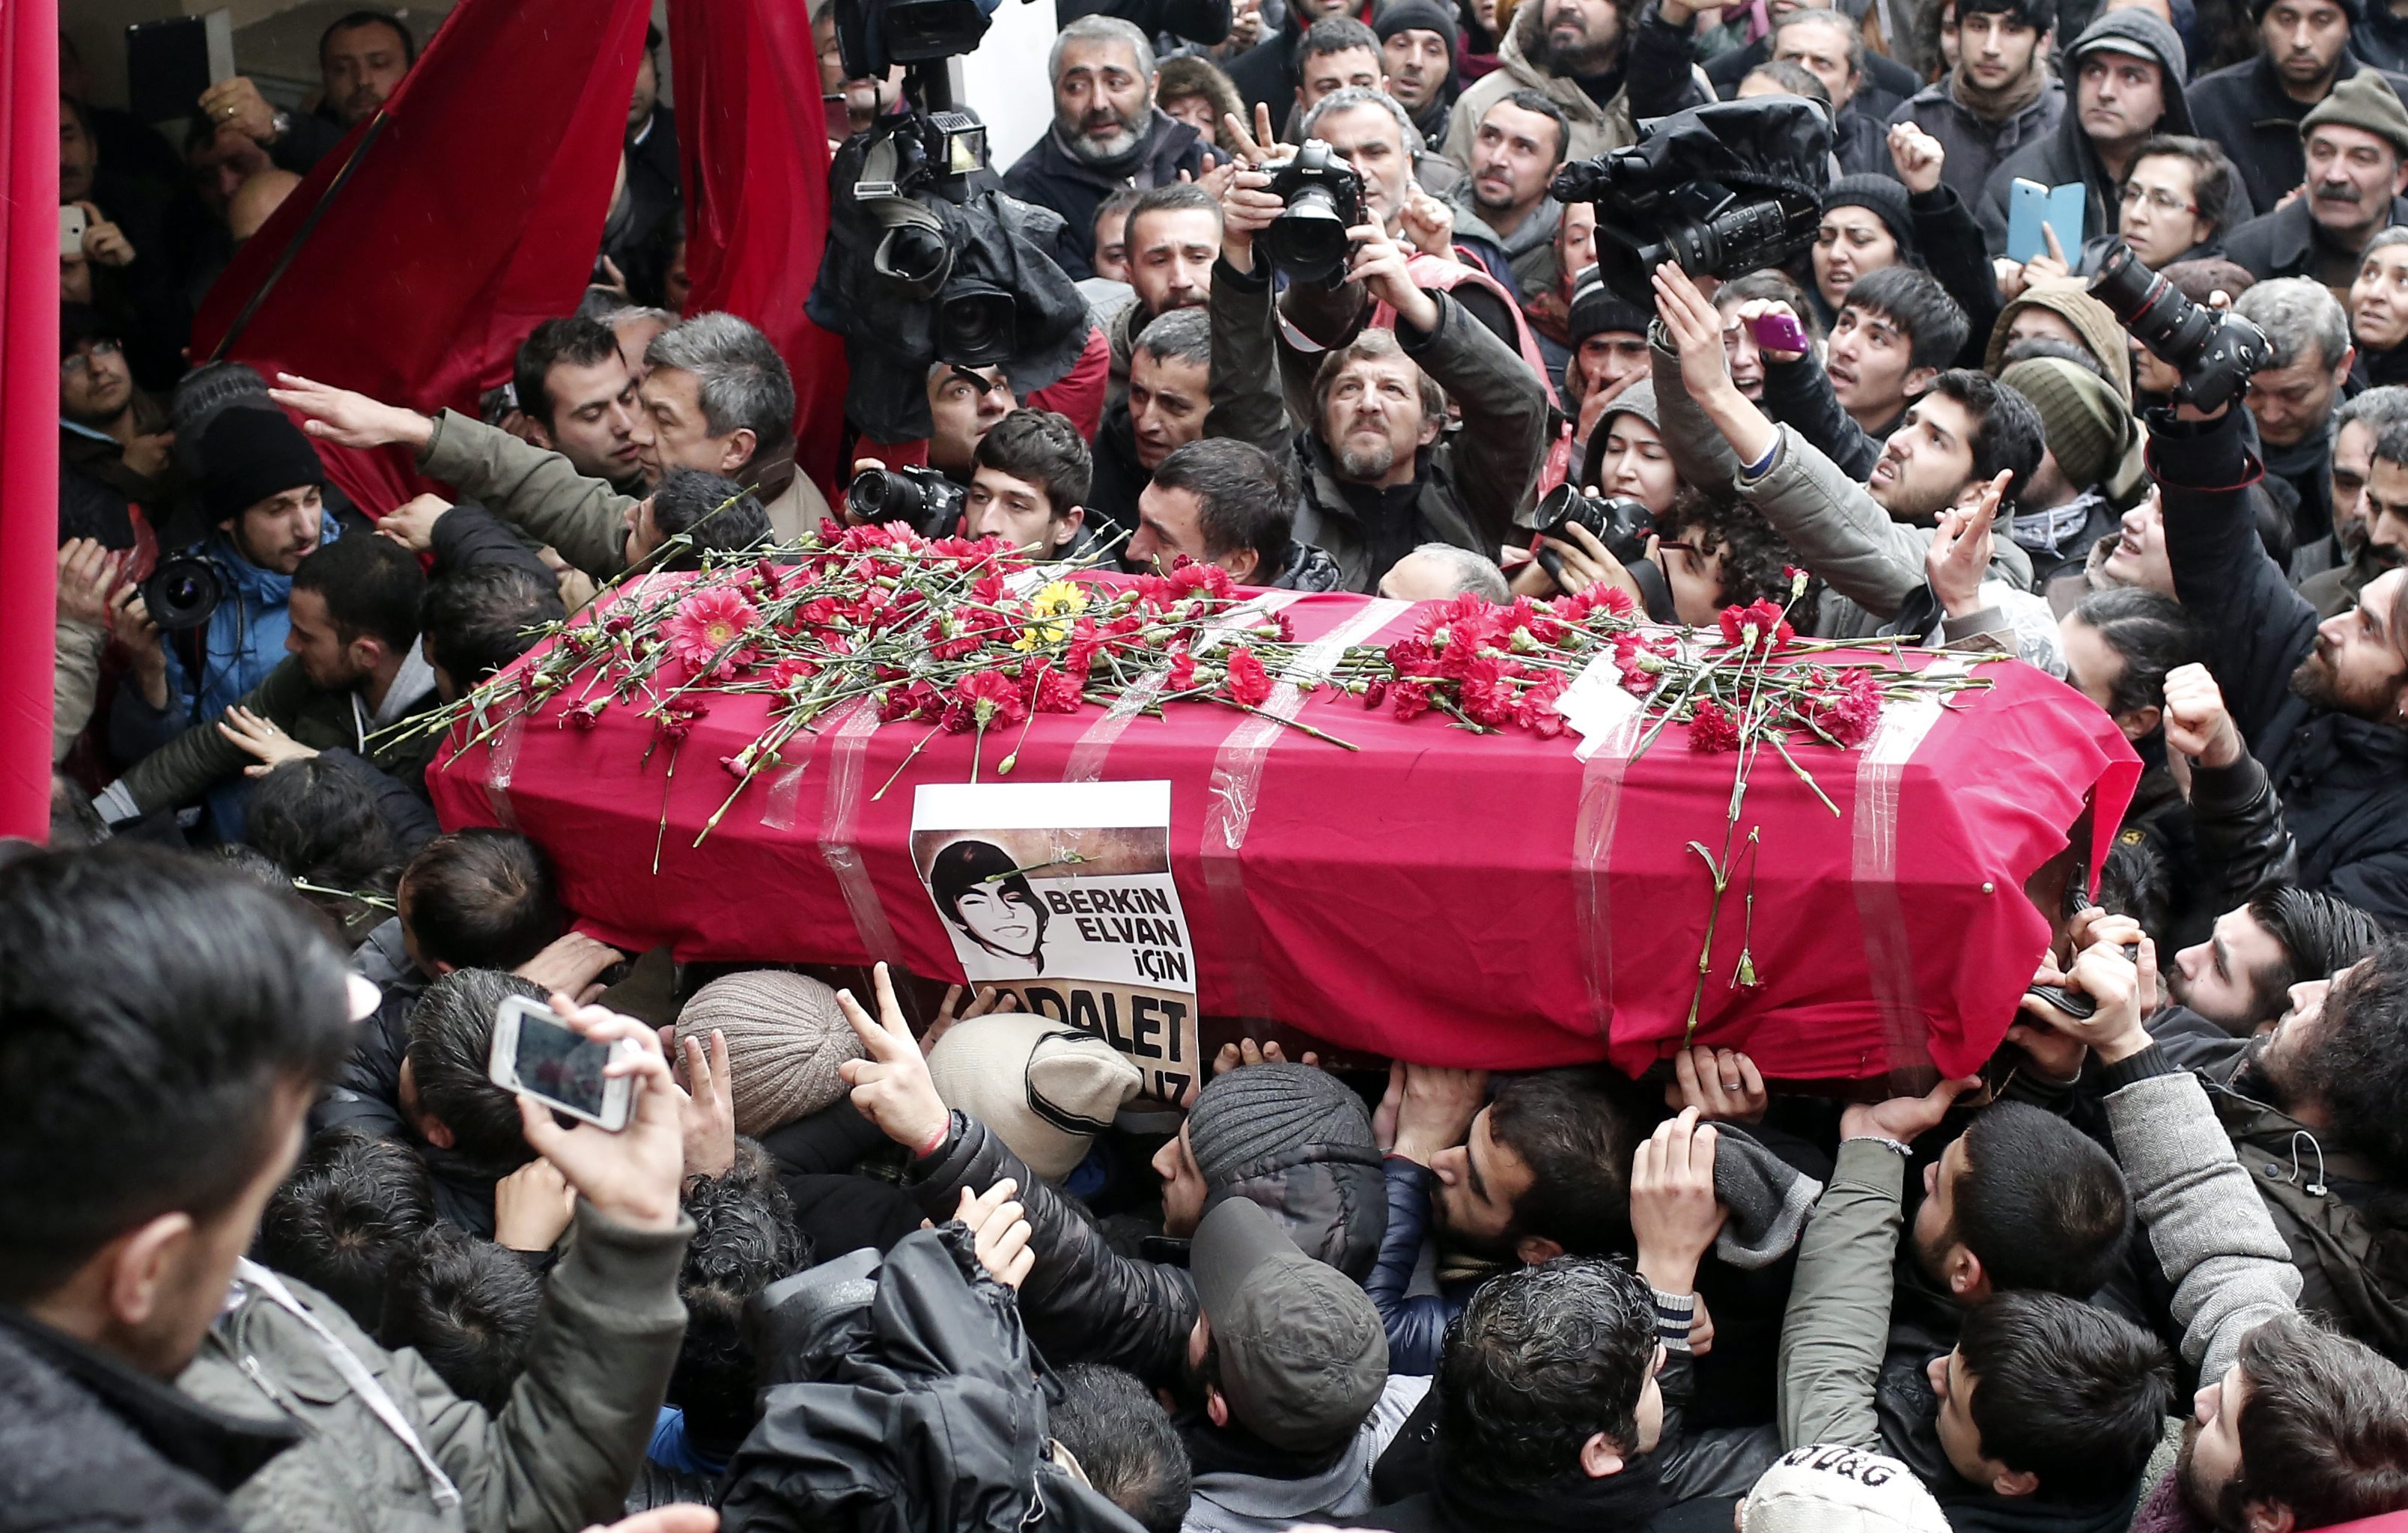 Θρήνος και οργή στην Τουρκία στην κηδεία του 15χρονου Μπερκίν-Δεκάδες συλλήψεις σε Κωνσταντινούπολη, Αγκυρα